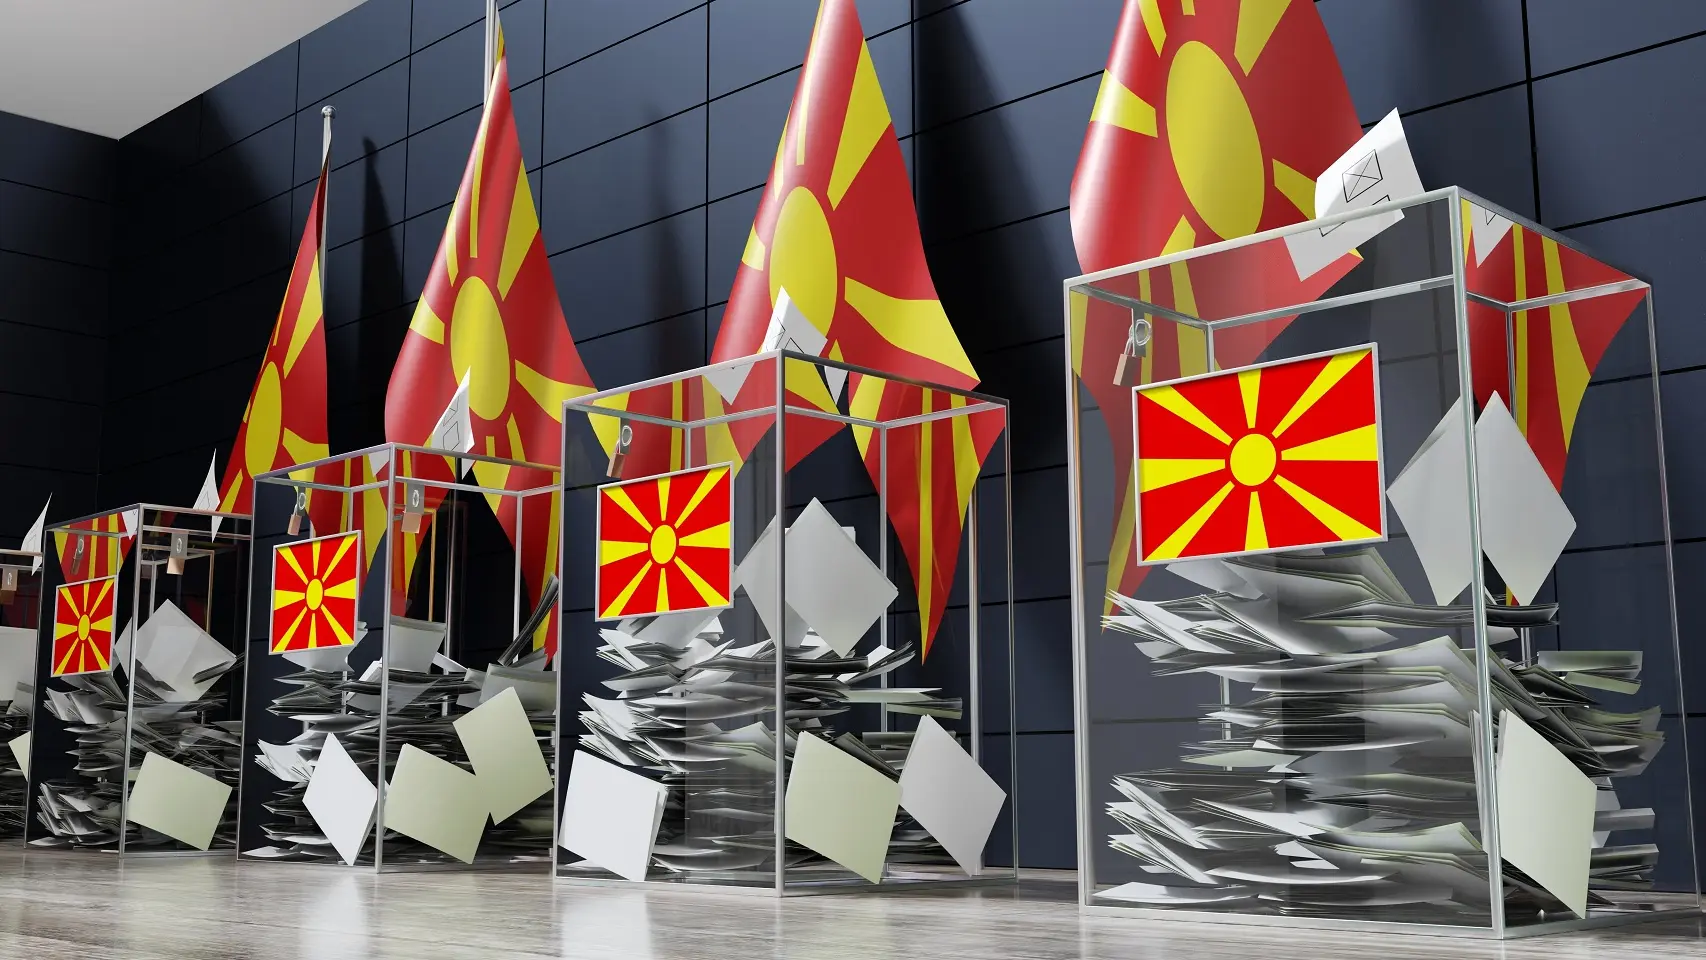 izbori u severnoj makedoniji, severna makedonija - shutterstock-65e4fc6688449.webp